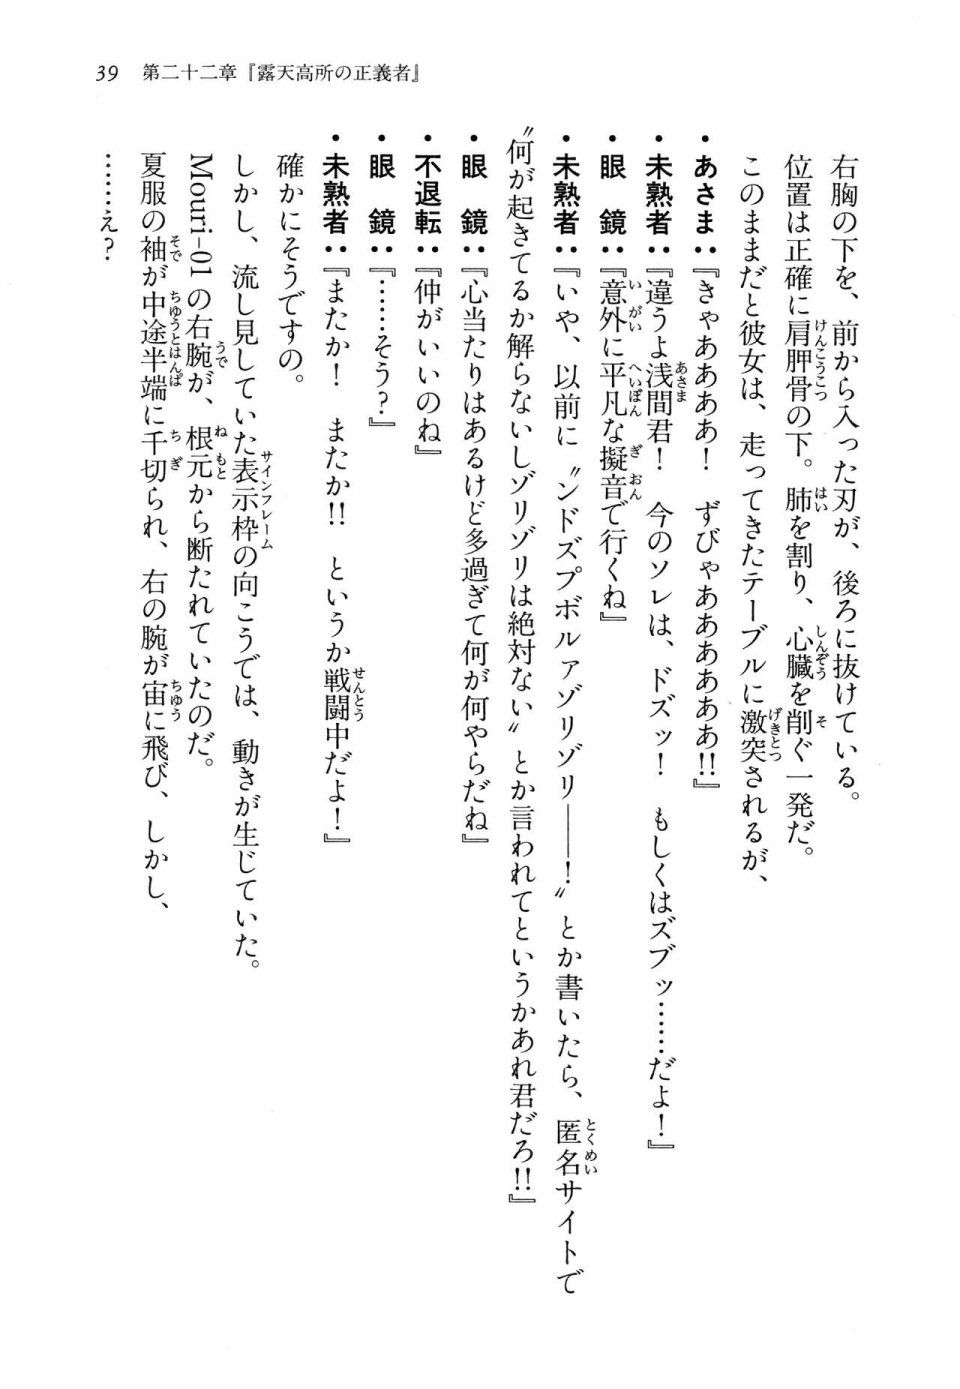 Kyoukai Senjou no Horizon LN Vol 14(6B) - Photo #39